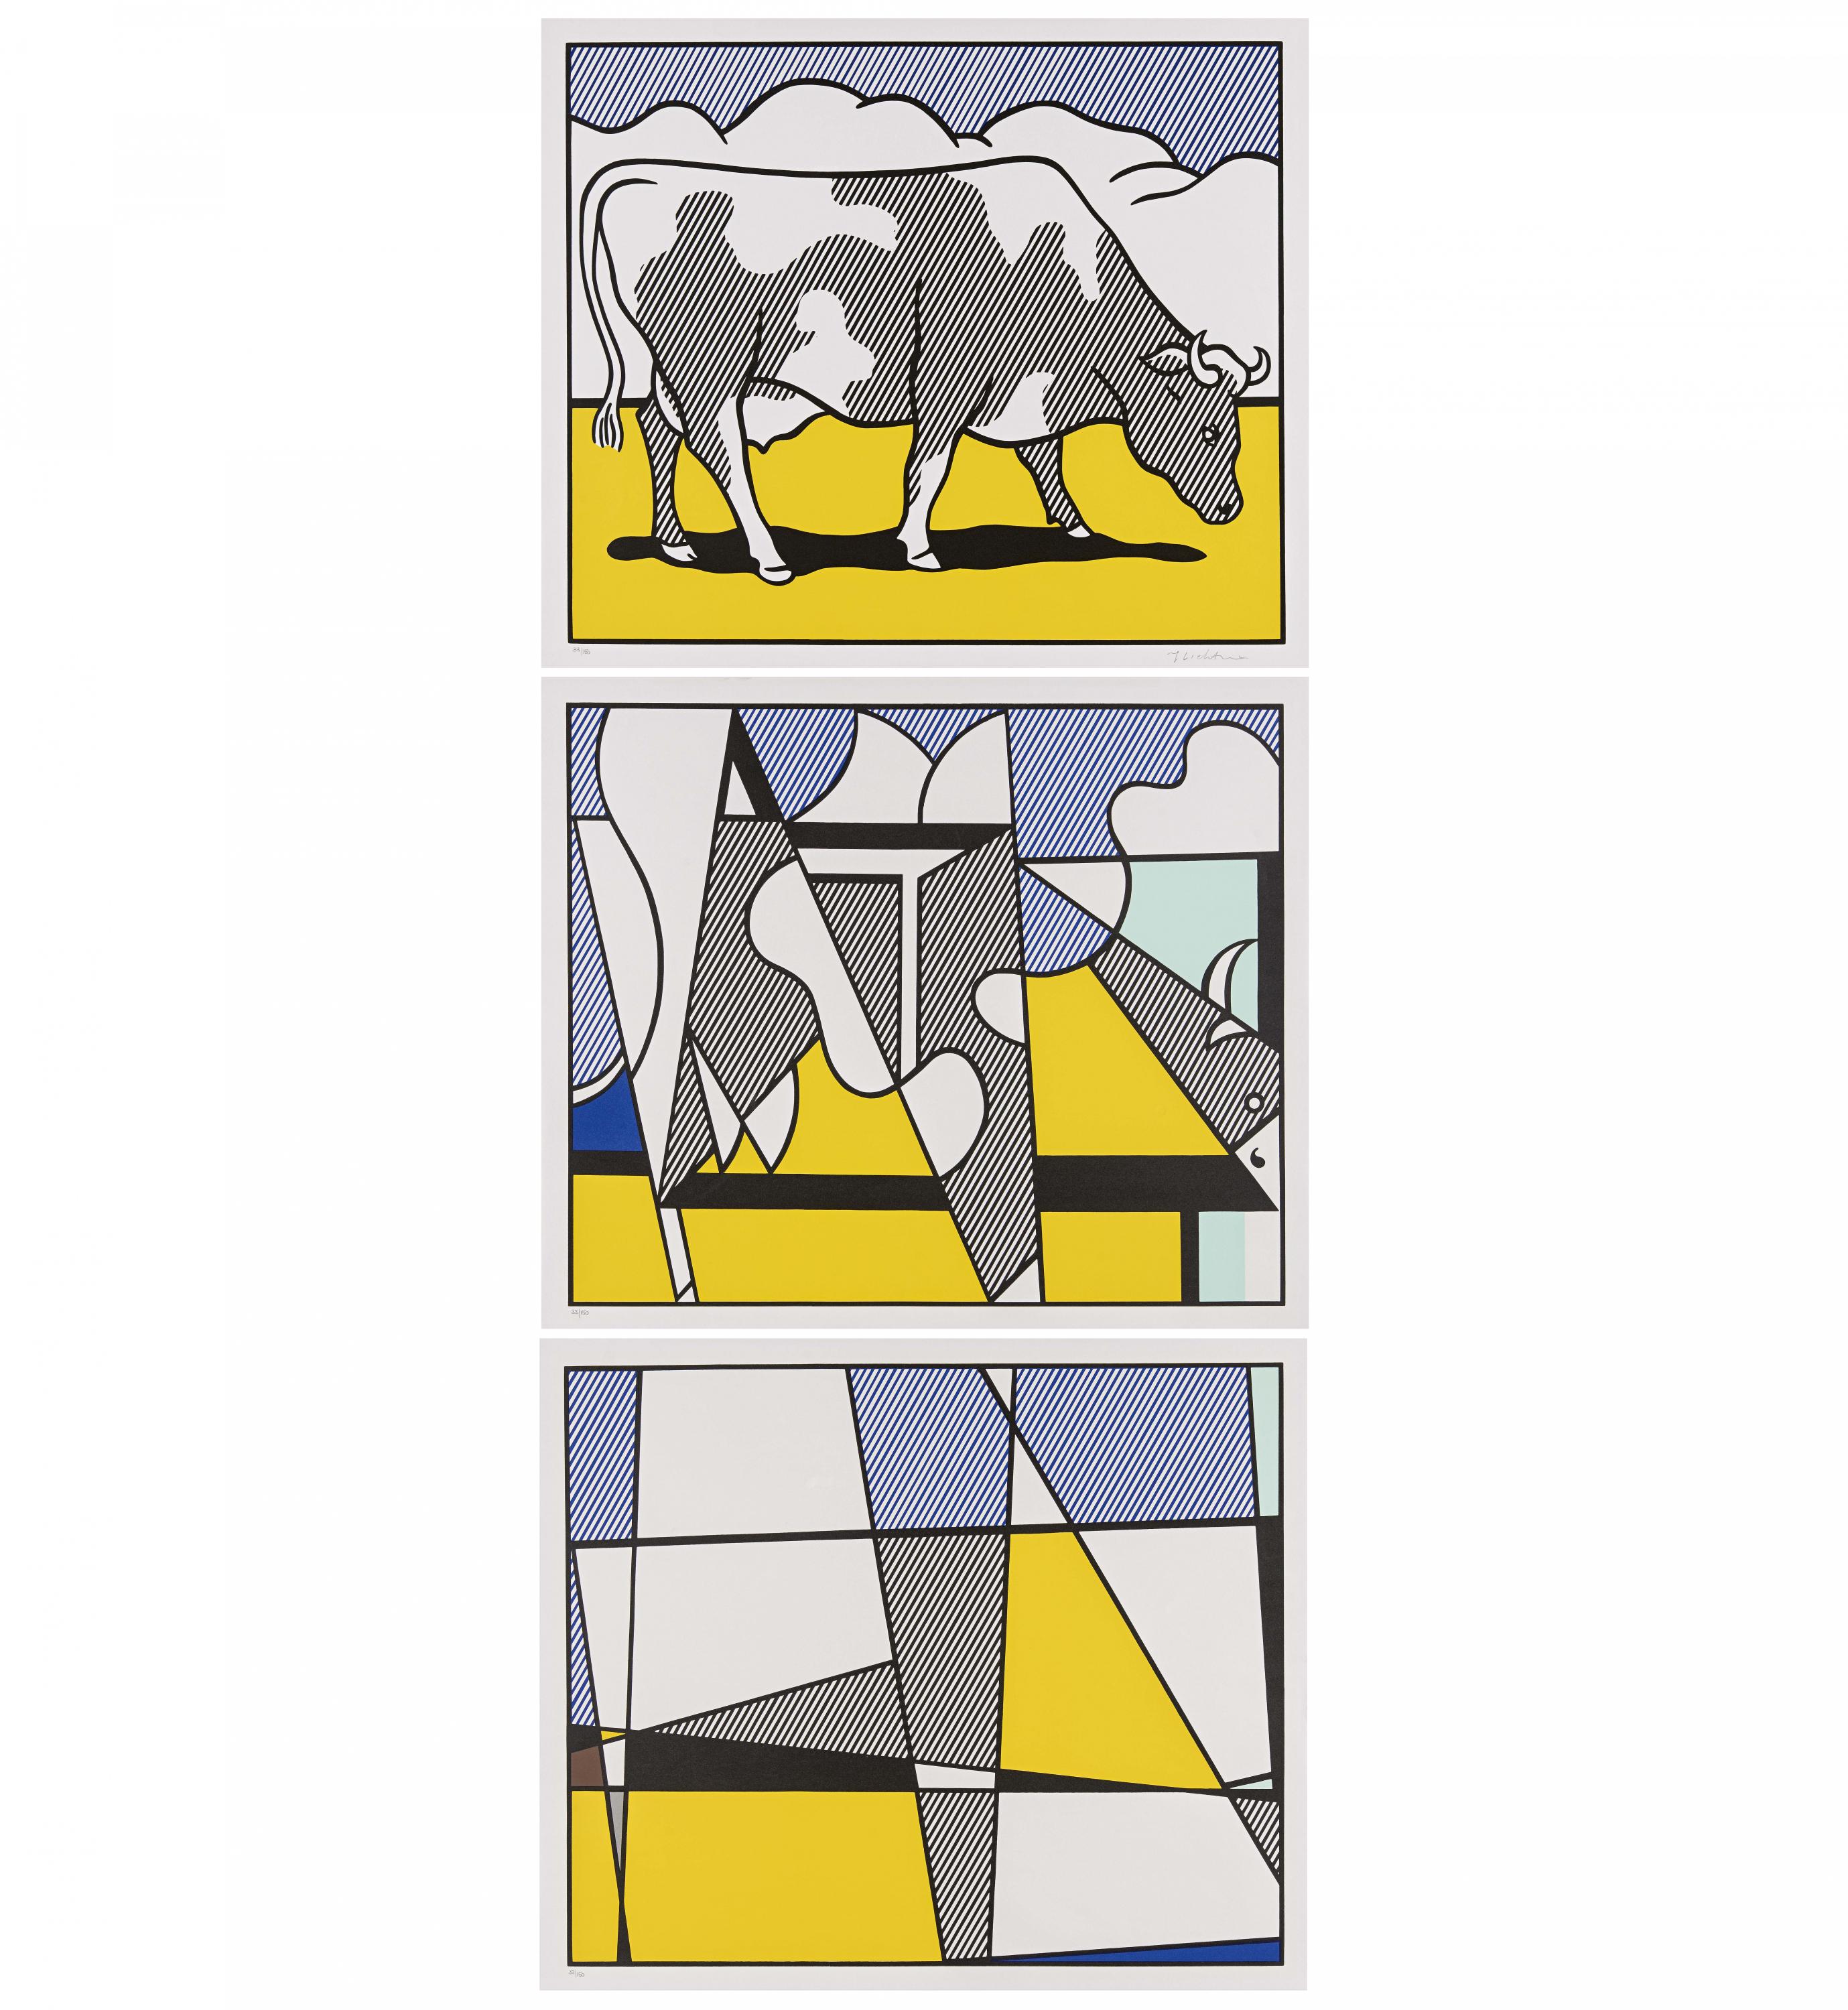 Roy Lichtenstein - Cow Triptych Cow Going Abstract, 69624-4, Van Ham Kunstauktionen